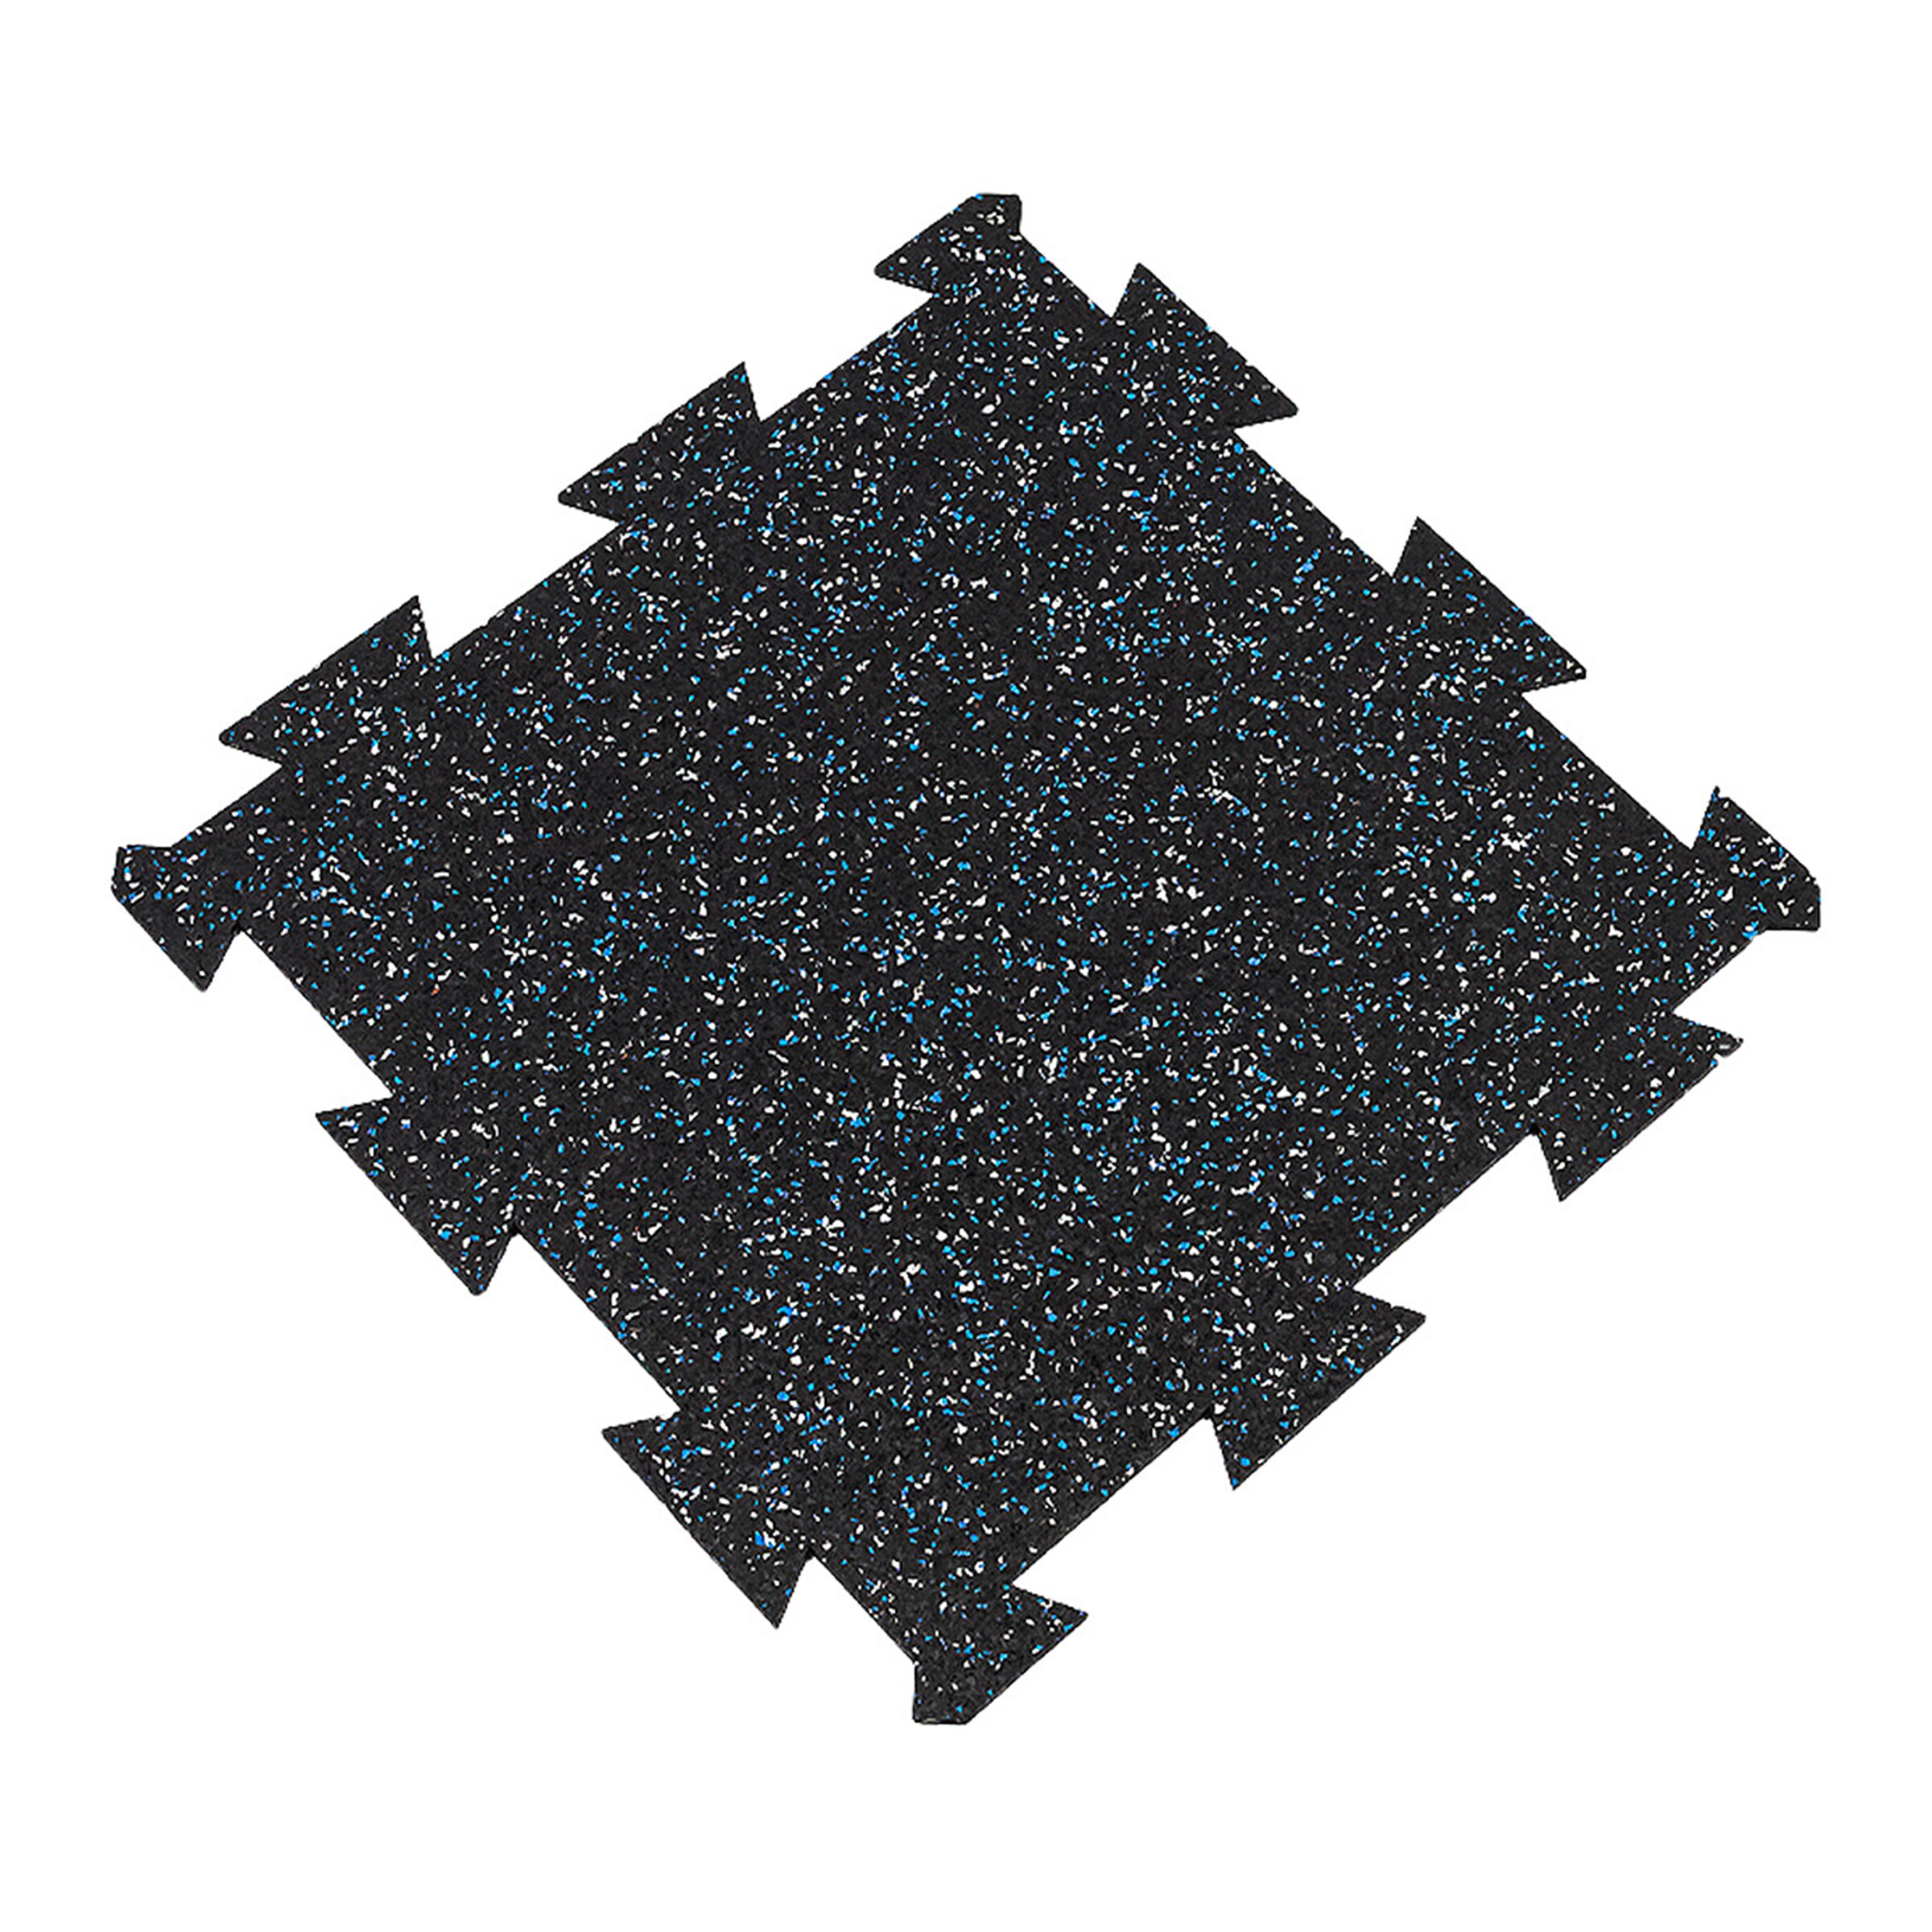 Černo-bílo-modrá gumová modulová puzzle dlažba (střed) FLOMA FitFlo SF1050 - délka 50 cm, šířka 50 cm, výška 1 cm